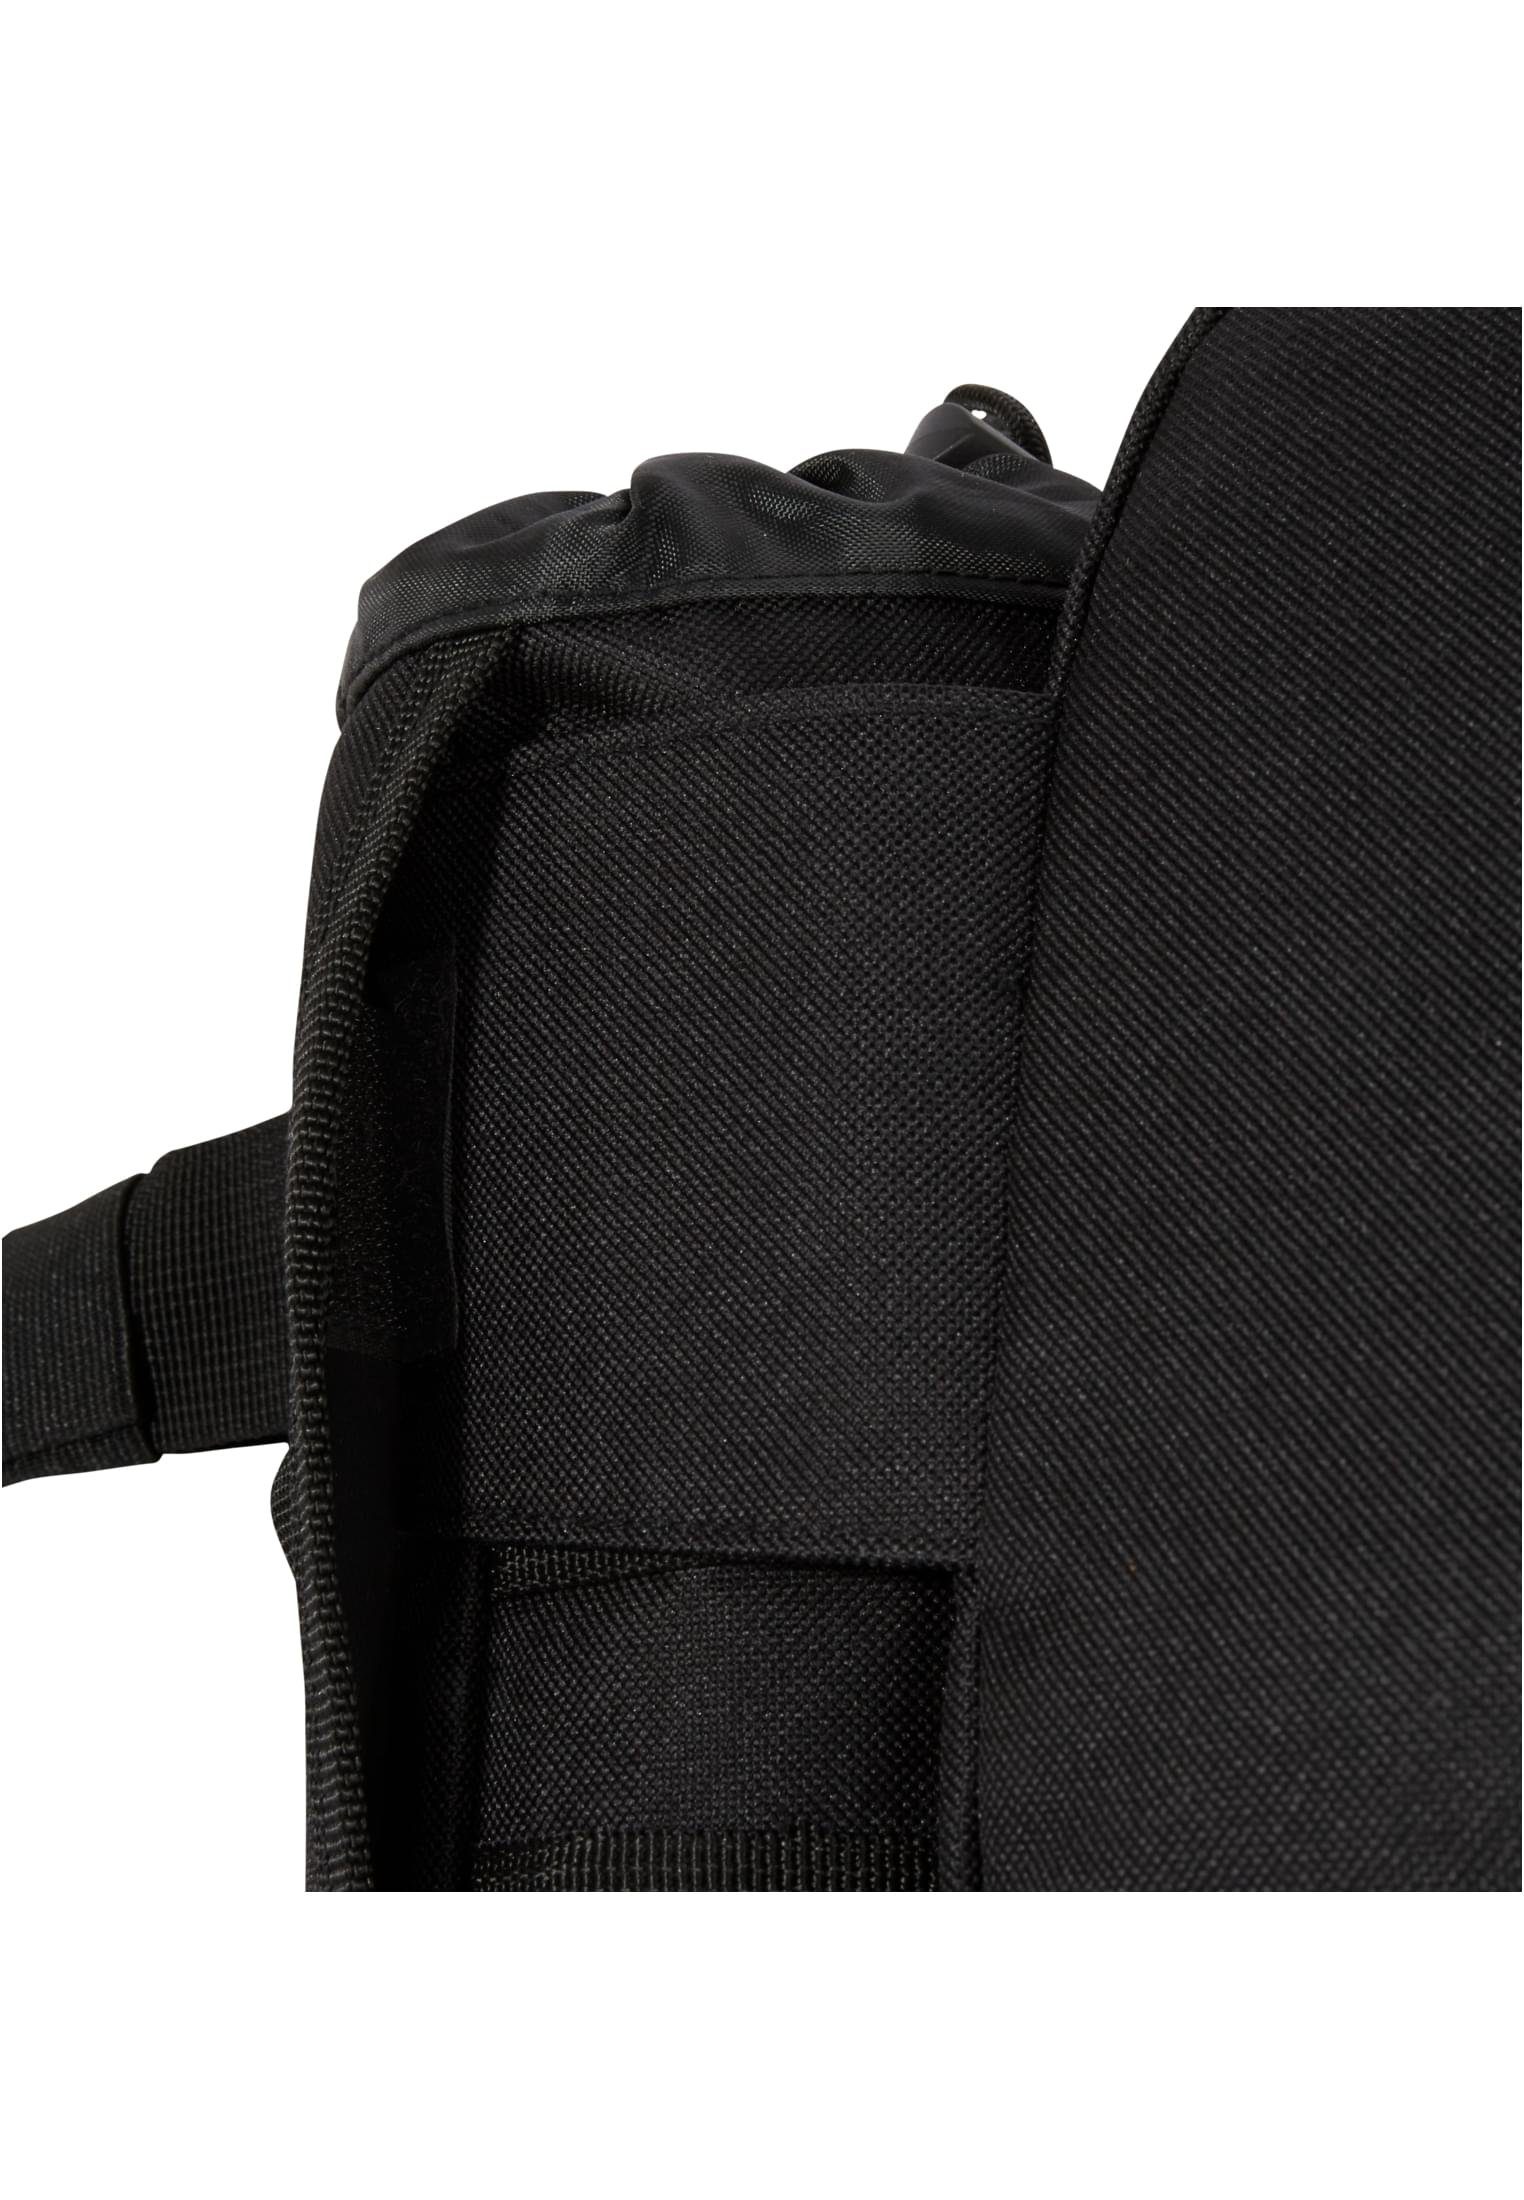 waistbeltbag (1-tlg) Accessoires black Handtasche Brandit Allround